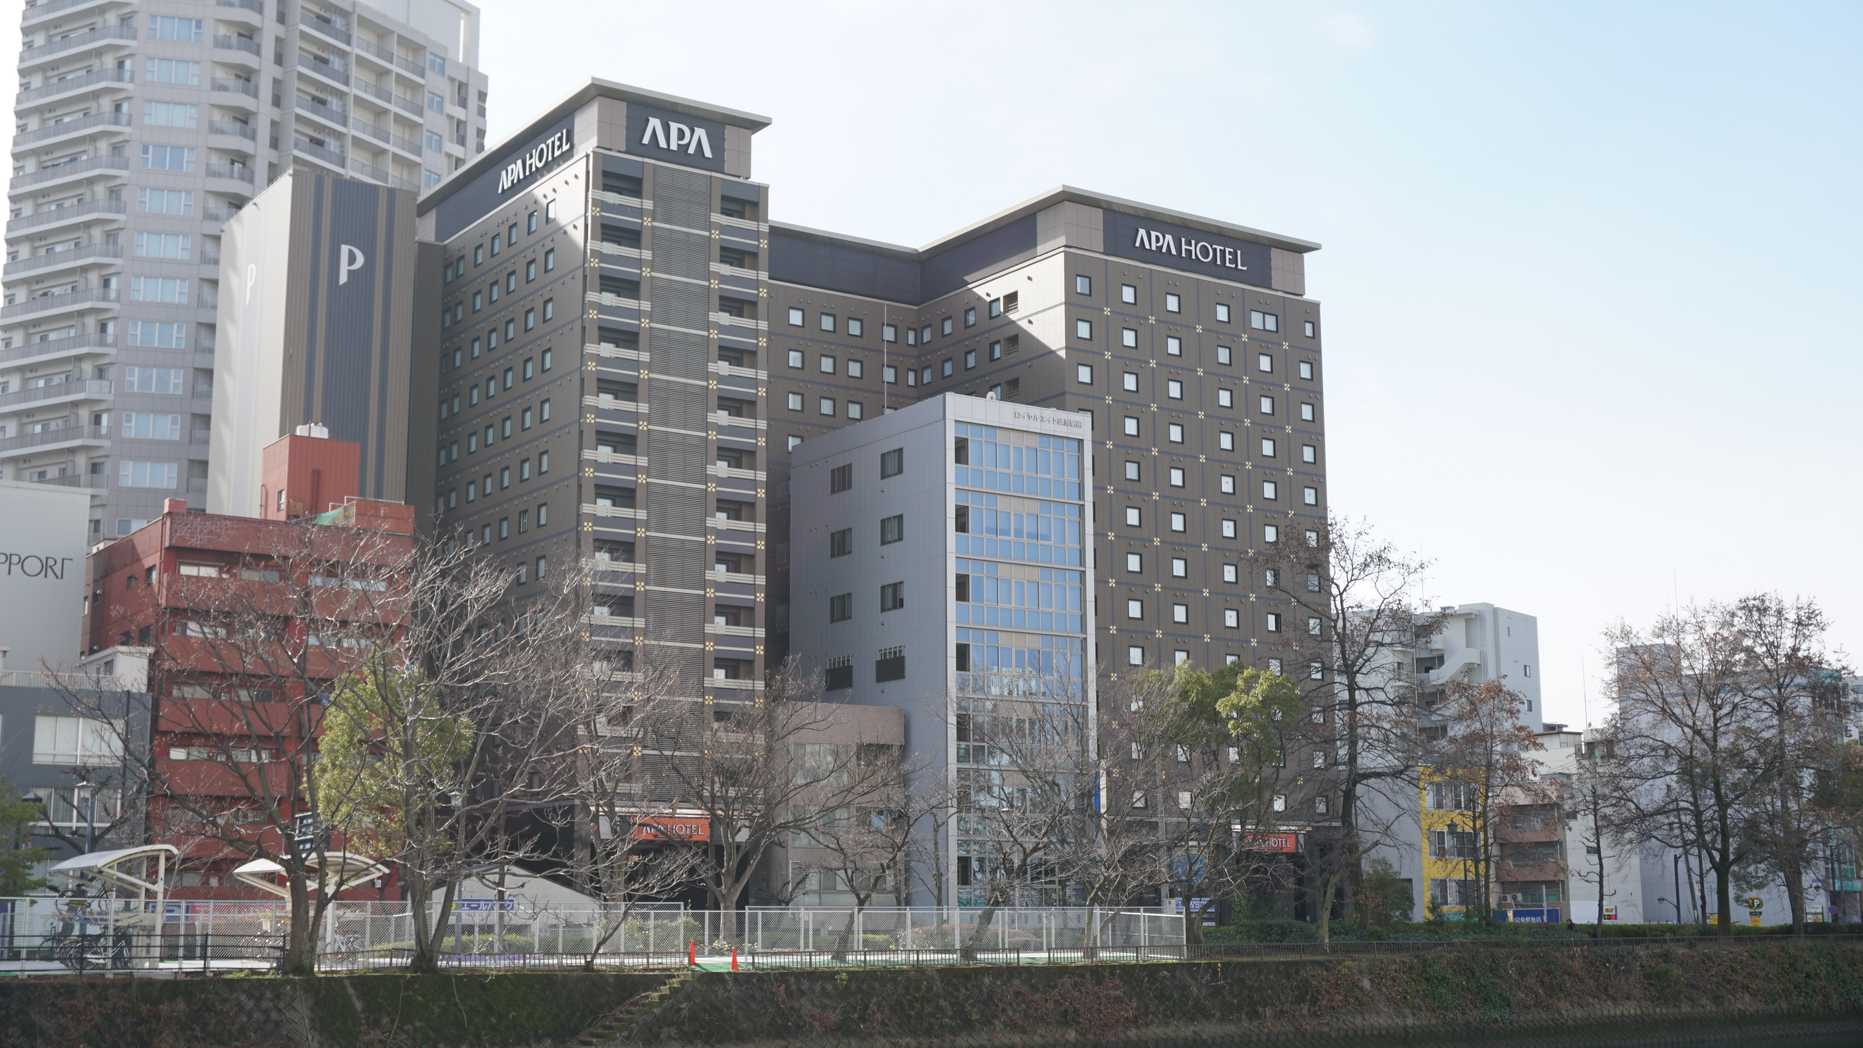 アパホテル広島駅前大橋 凹型の奇妙な建物が印象的な効率化を極めたビジネスホテル ビジホモード